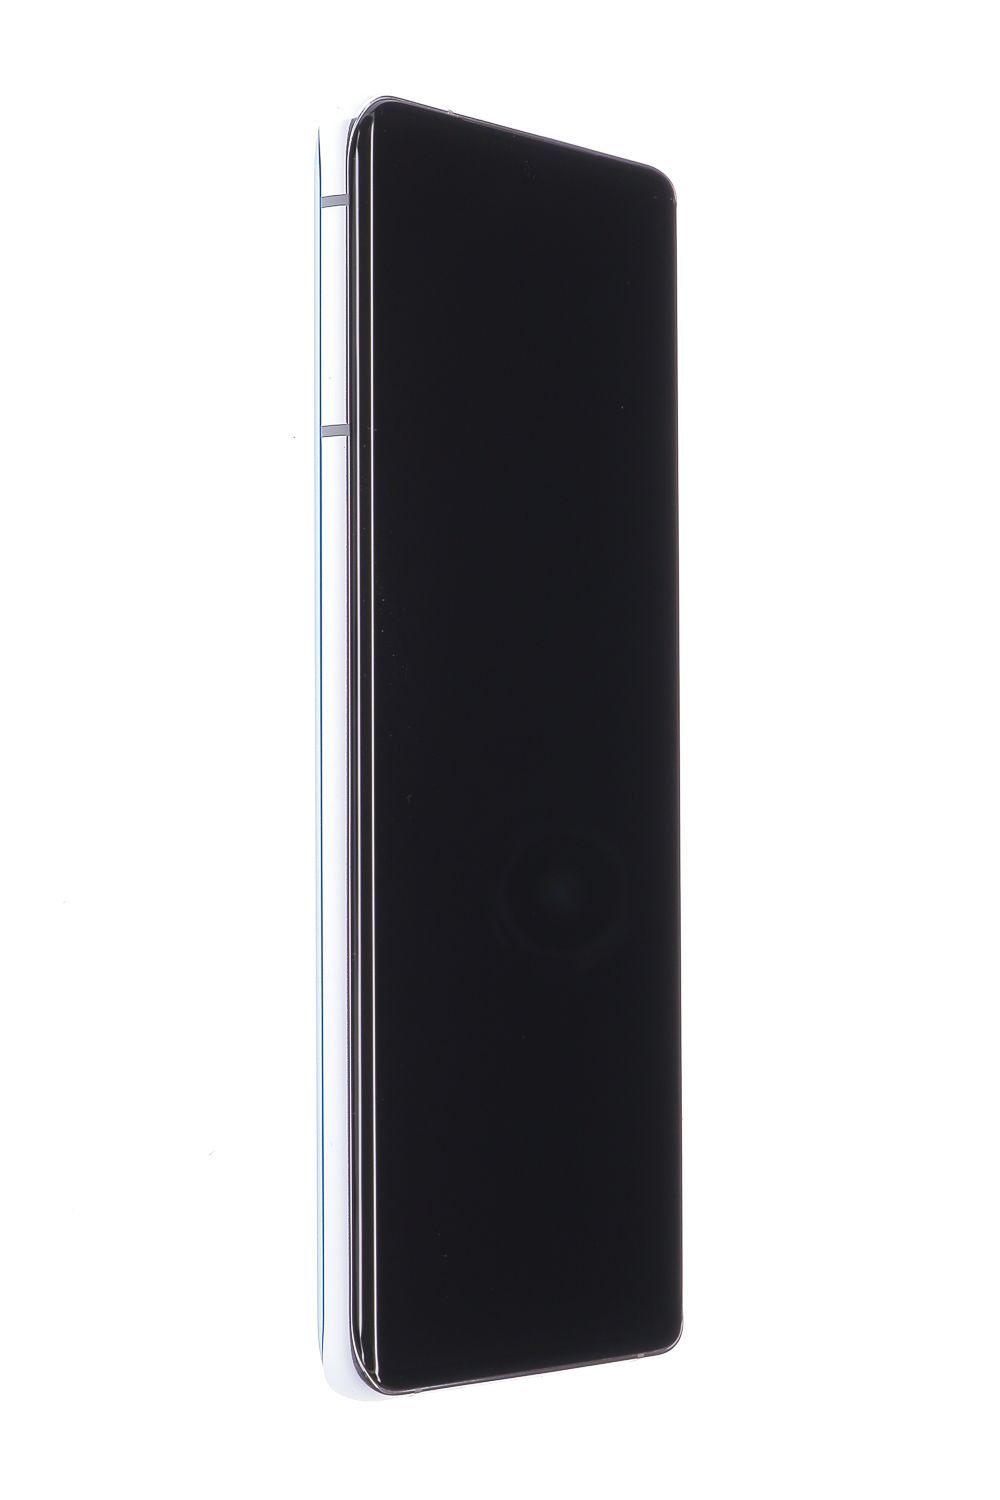 Κινητό τηλέφωνο Samsung Galaxy S21 Ultra 5G Dual Sim, Silver, 256 GB, Foarte Bun